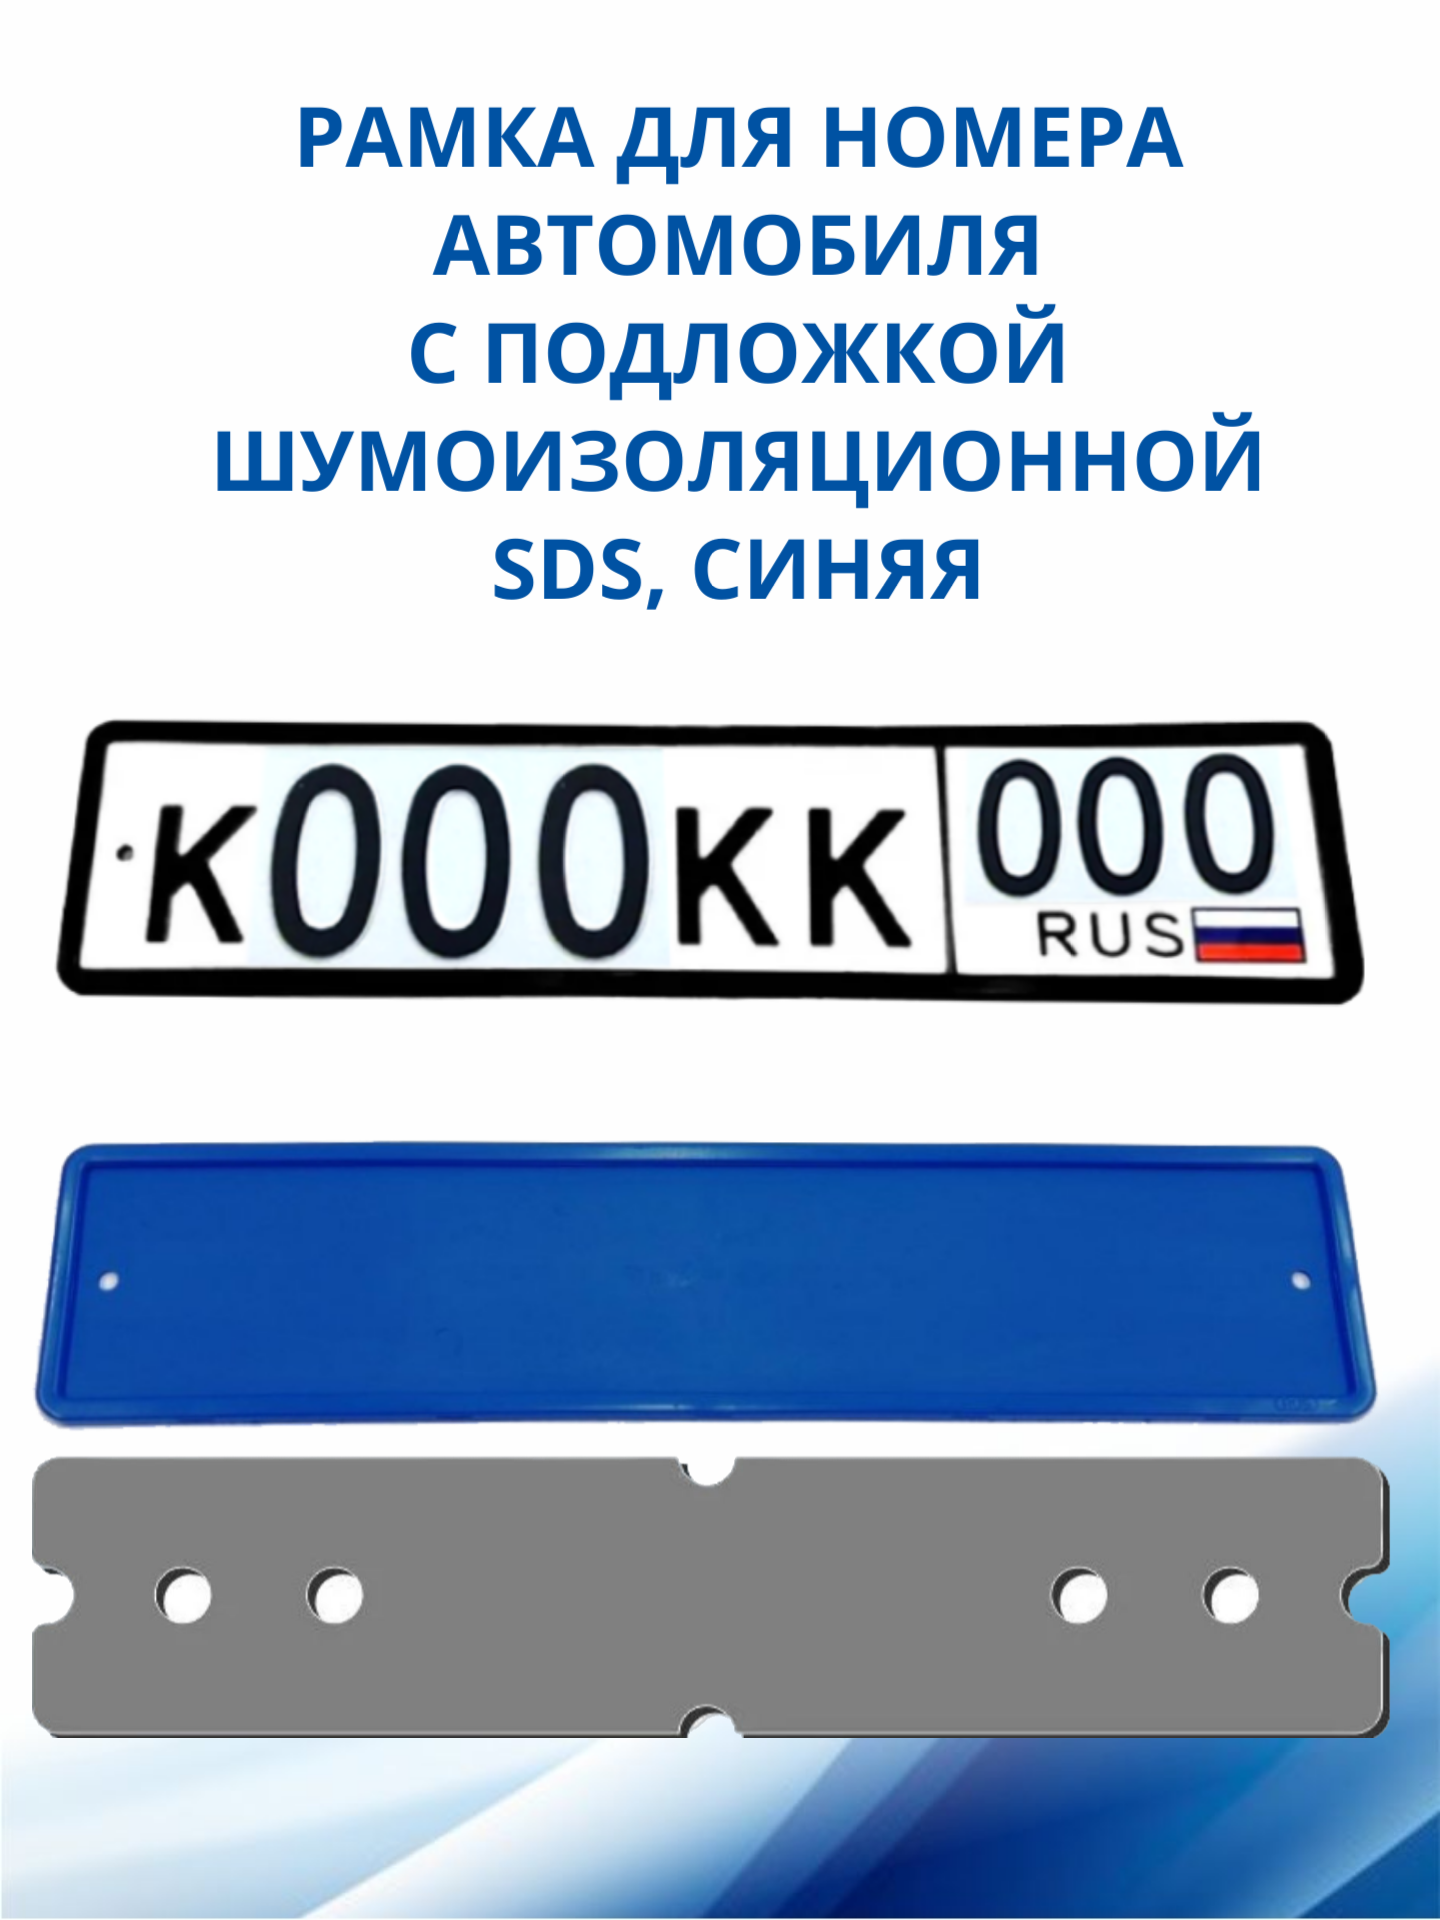 SDS / Рамка для номера автомобиля Синяя силикон с подложкой шумоизоляционной 1 шт